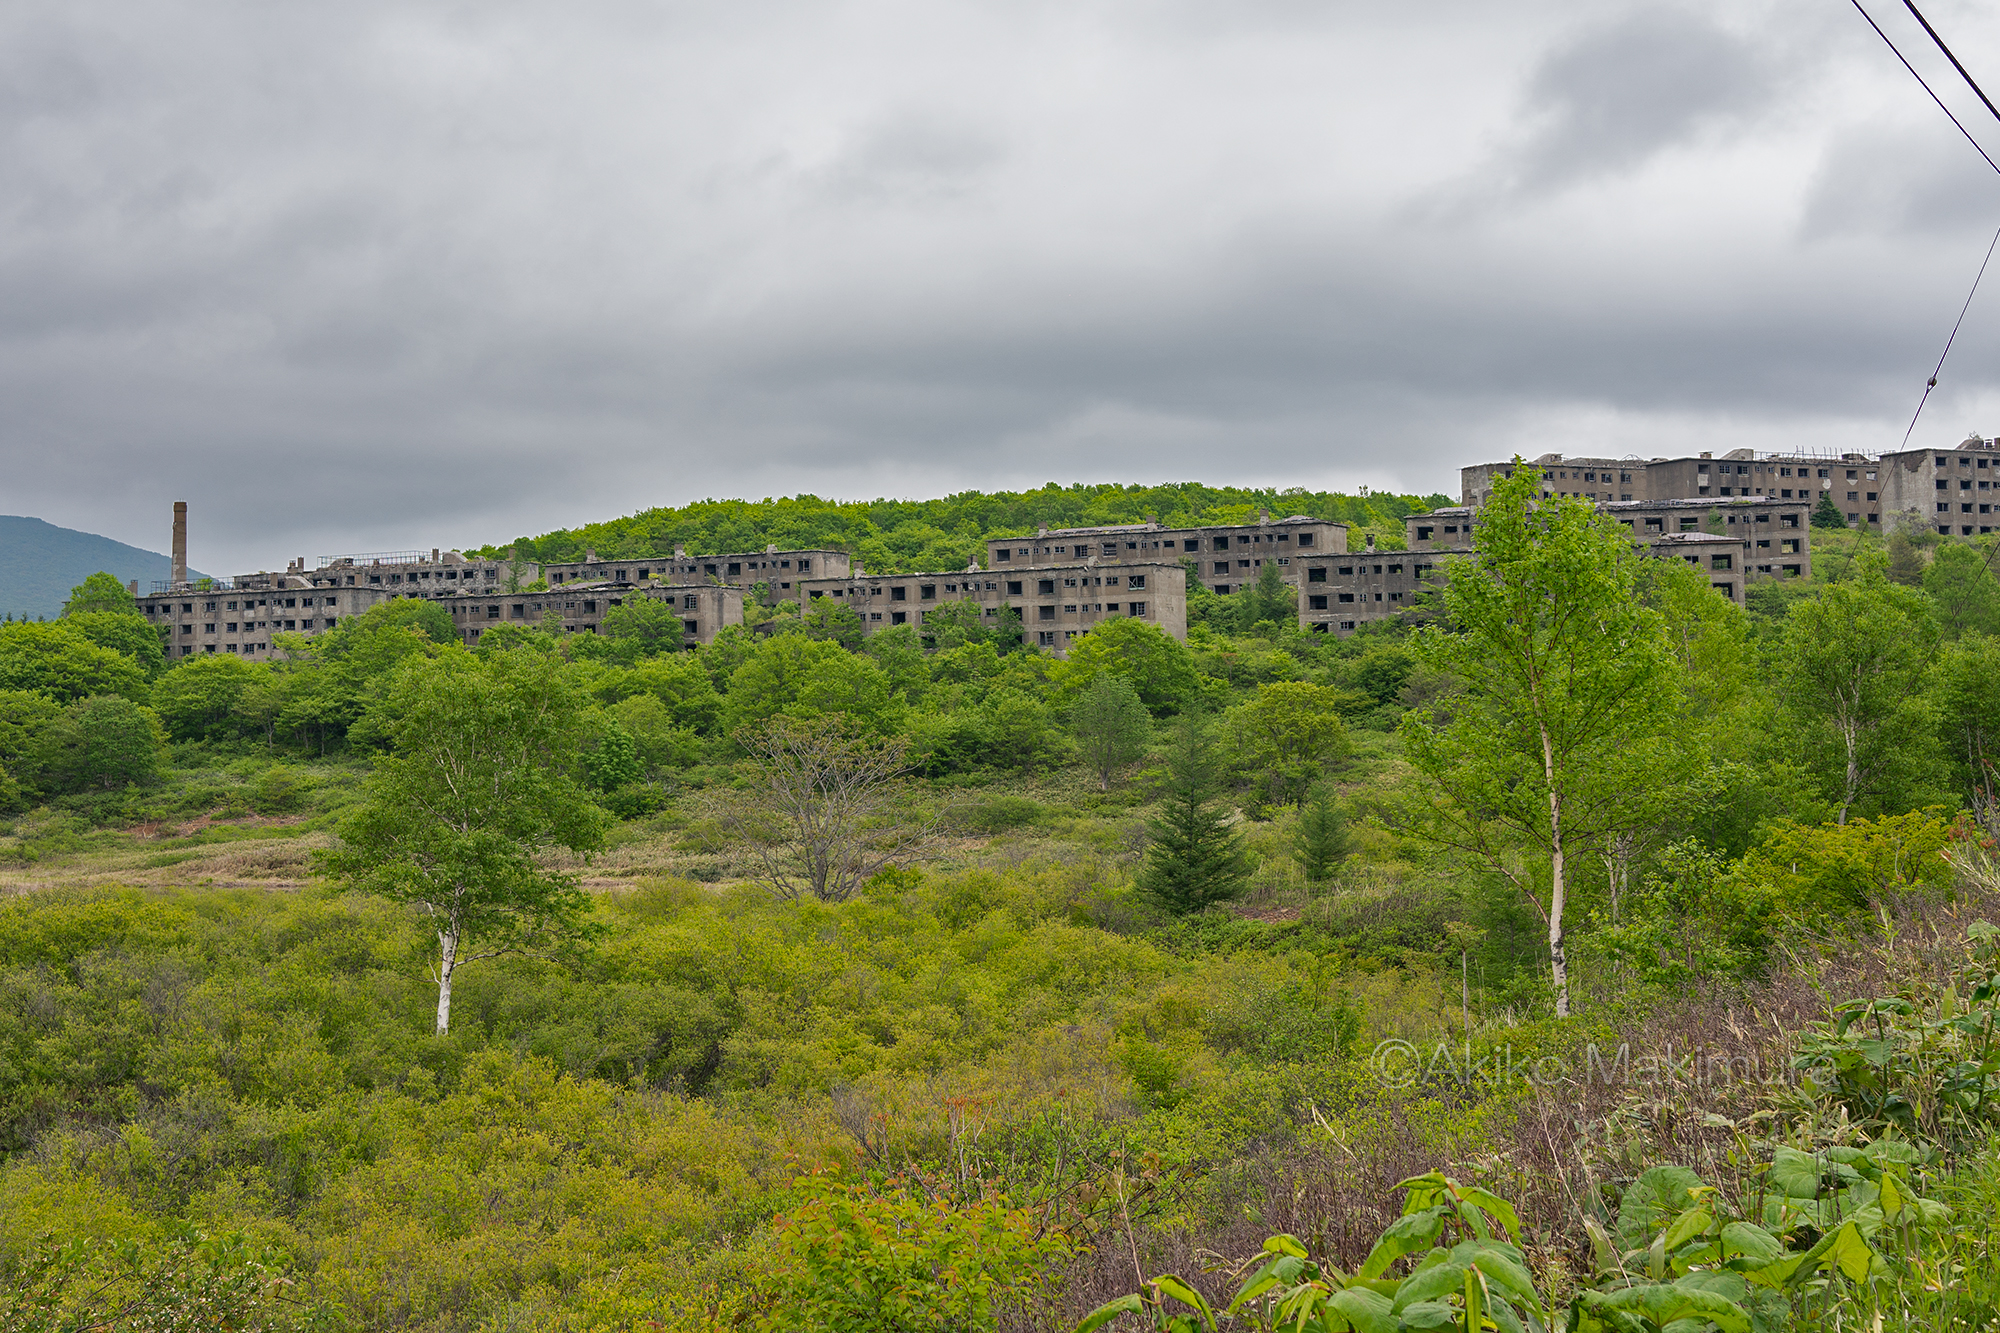 雲上の楽園と呼ばれた松尾鉱山跡地　今も残る東北随一の廃墟群